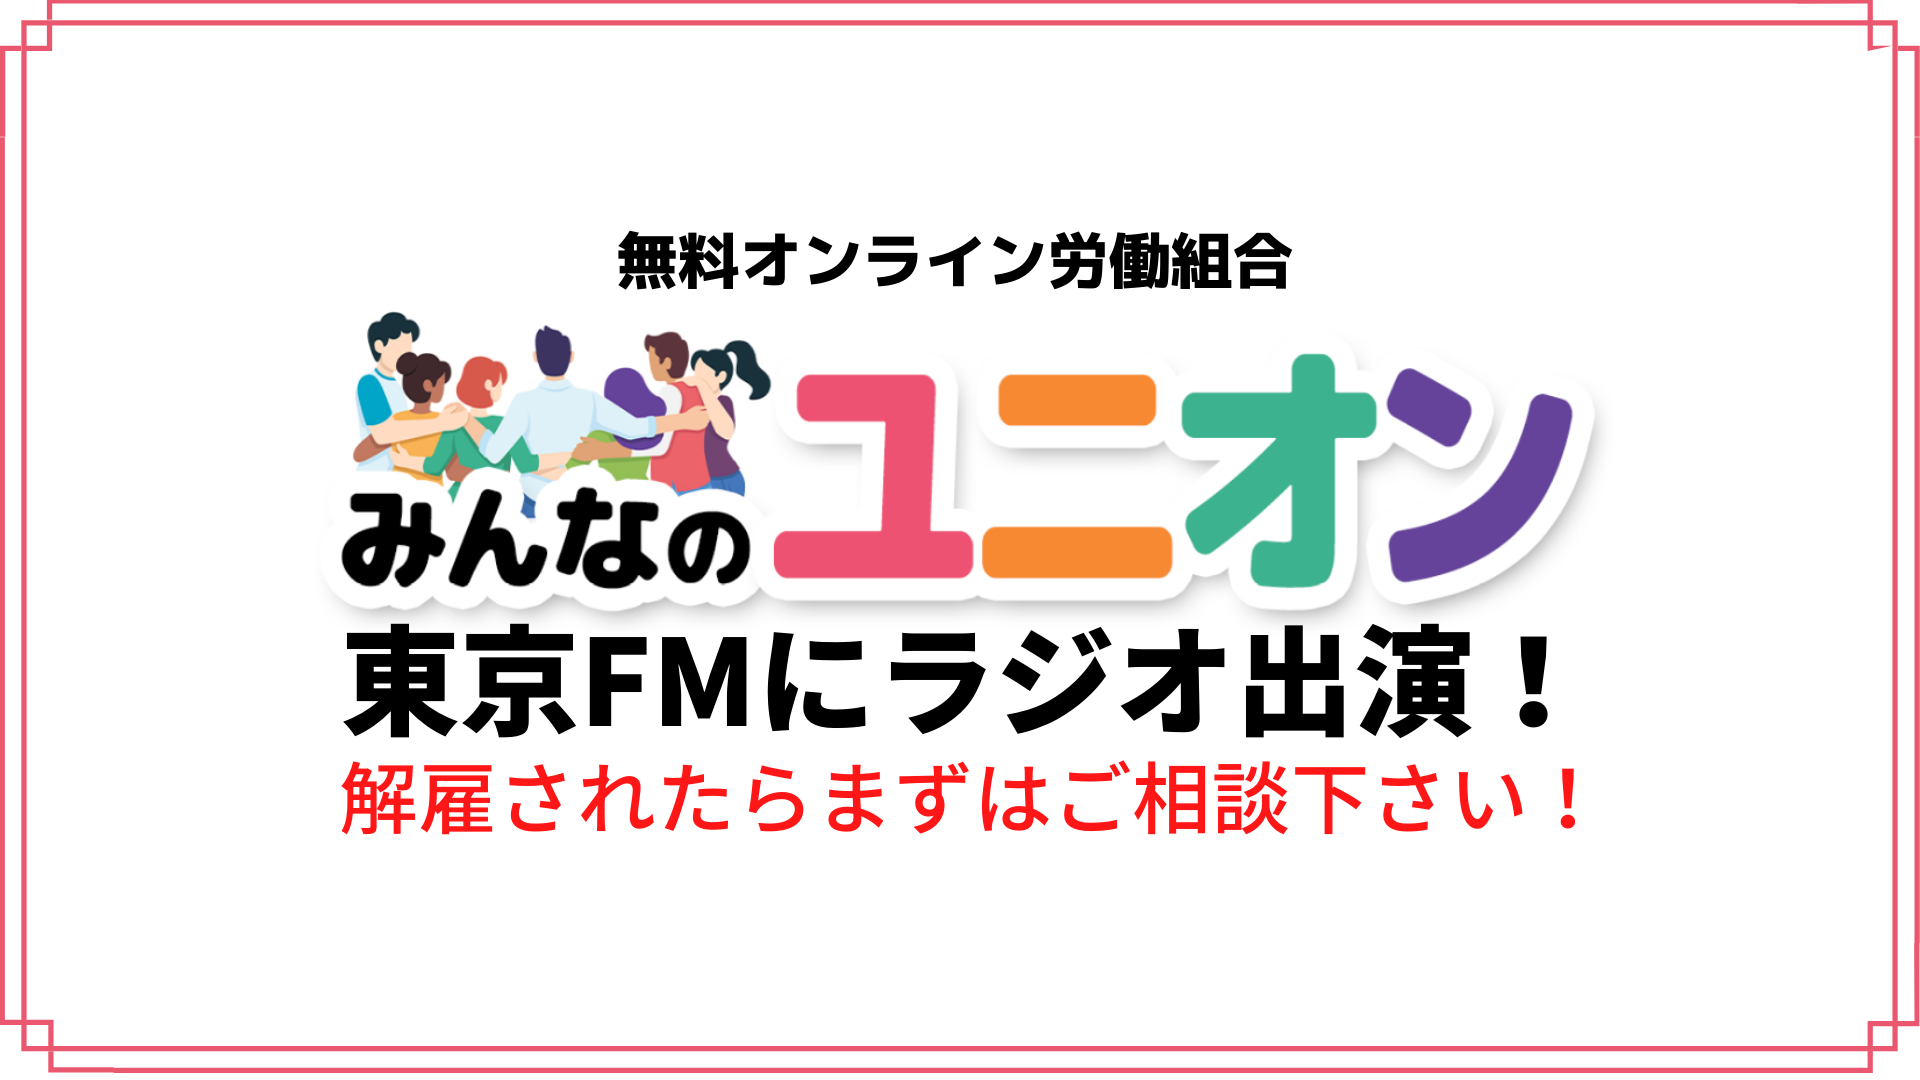 東京fmに出演 みんなのユニオンがラジオで取り上げられました Newscast